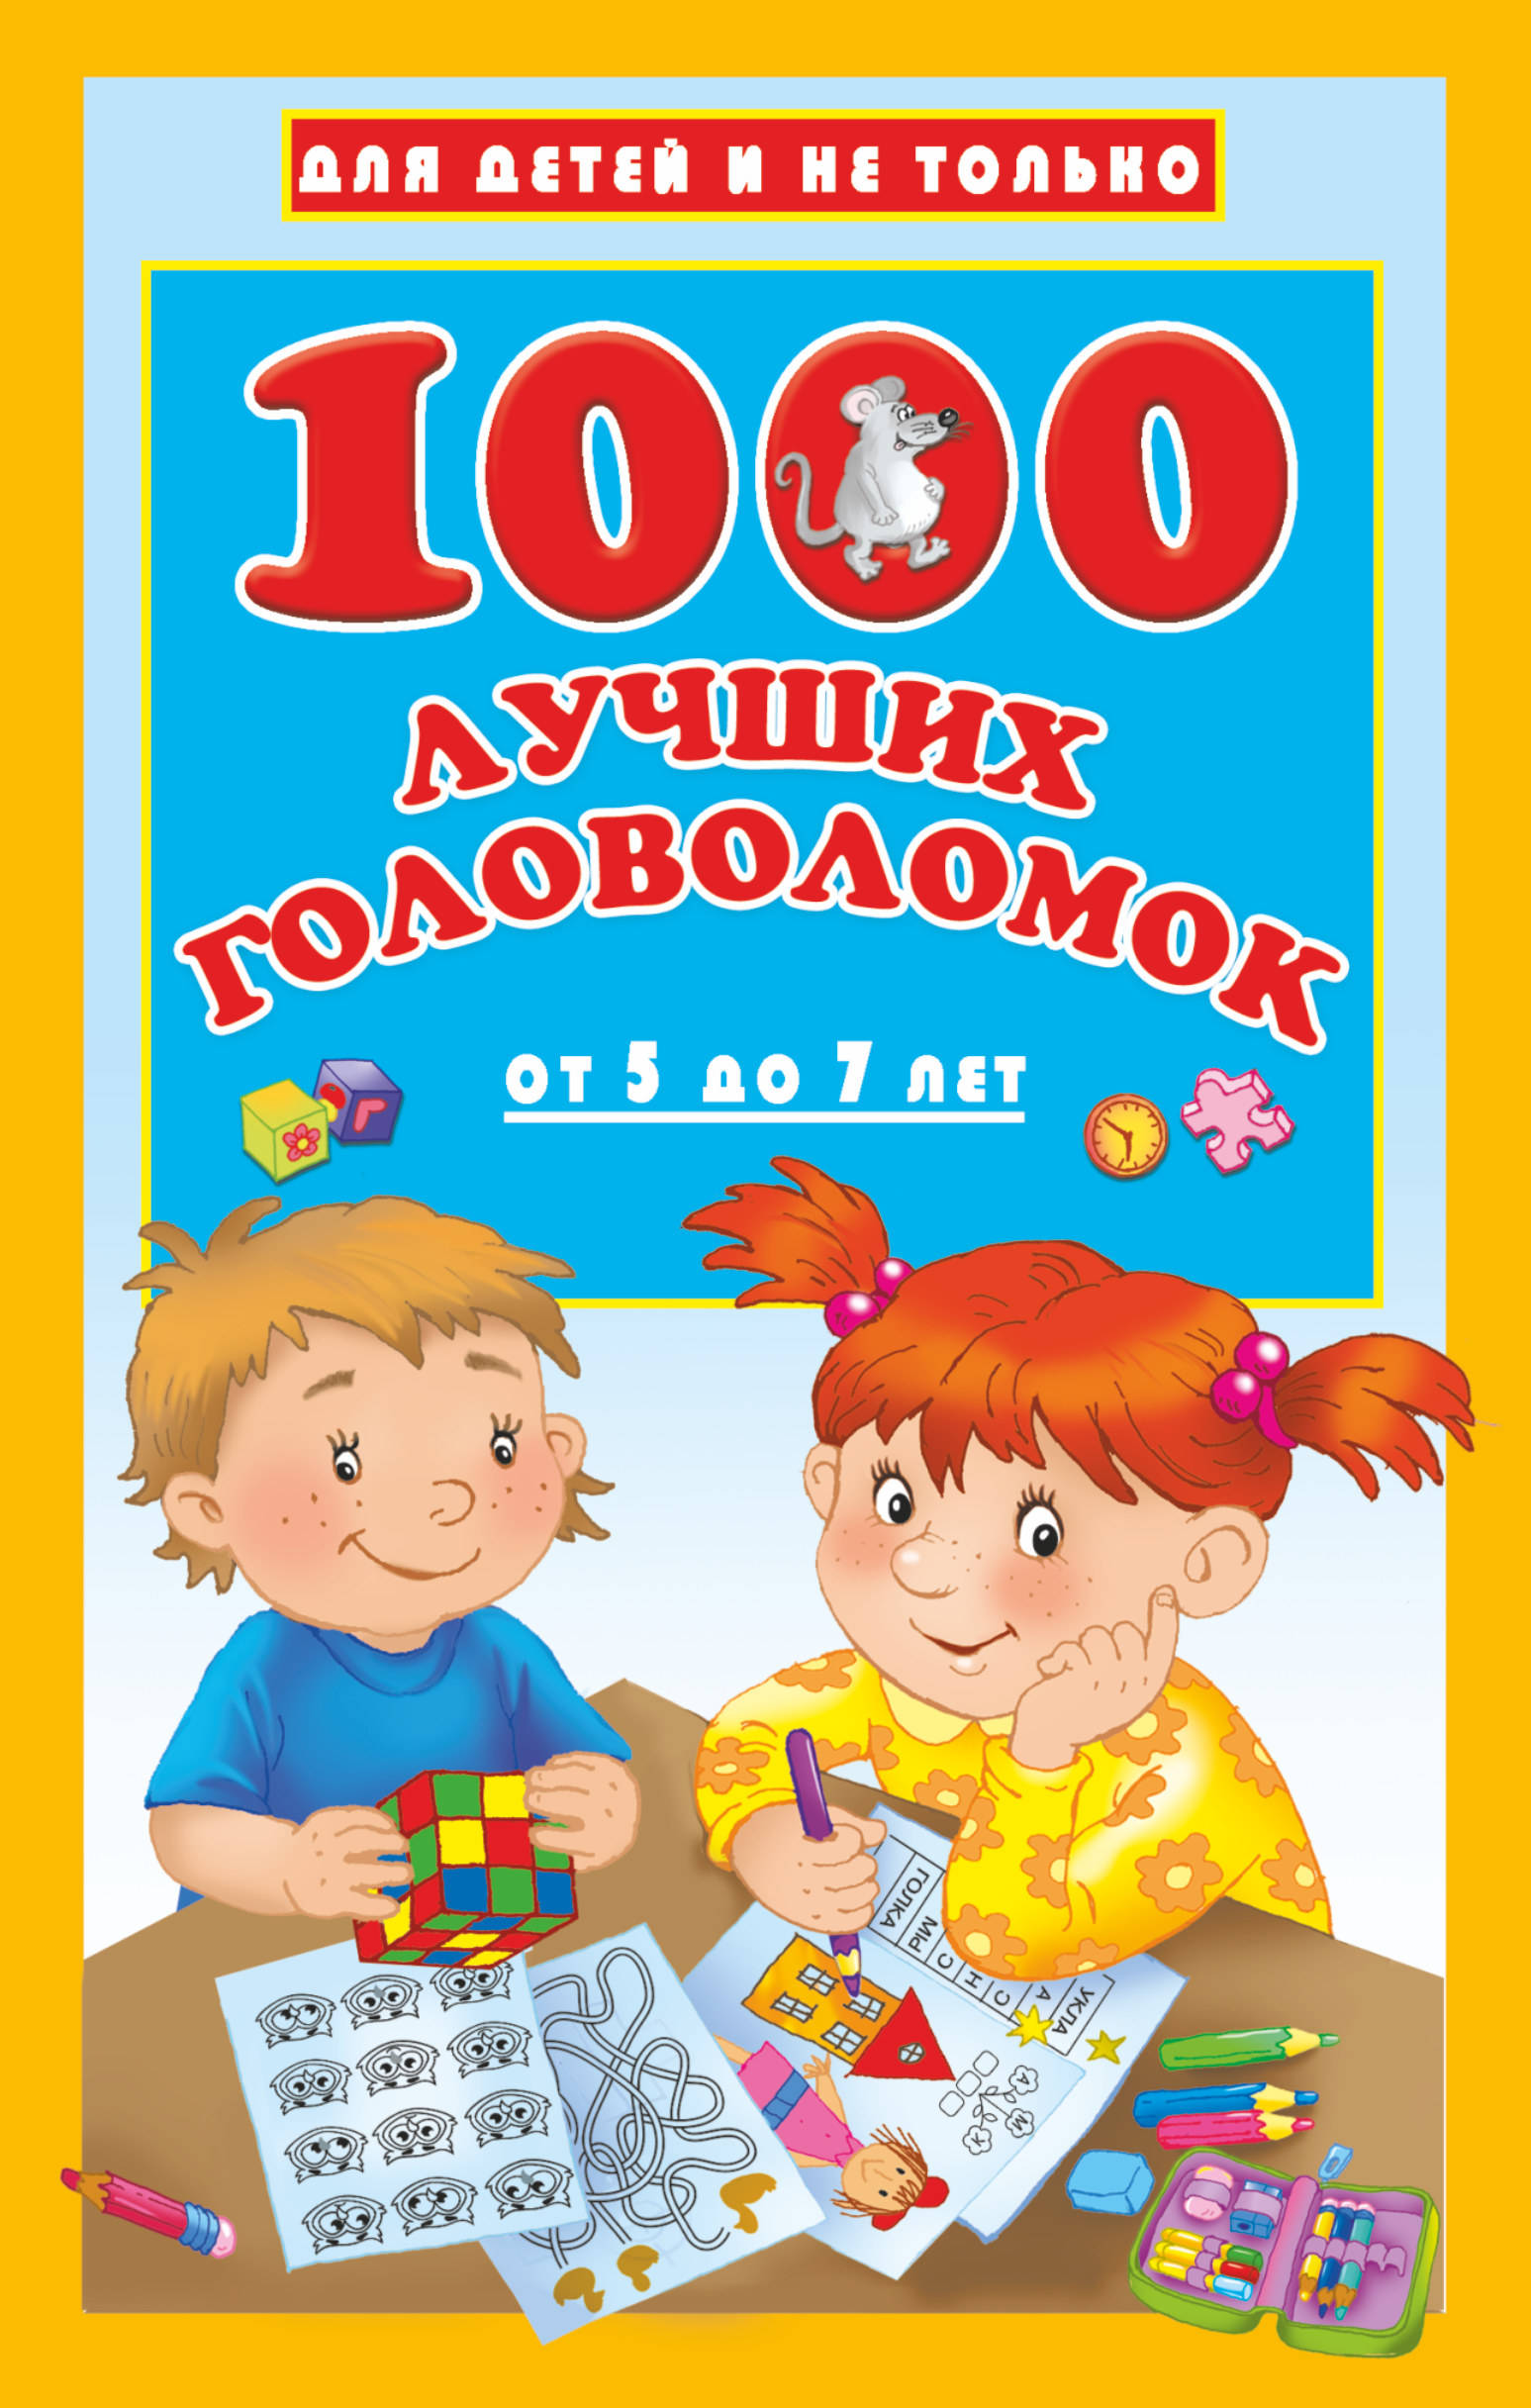 1000 лучших головоломок от 5 до 7 лет. Валентина Дмитриева